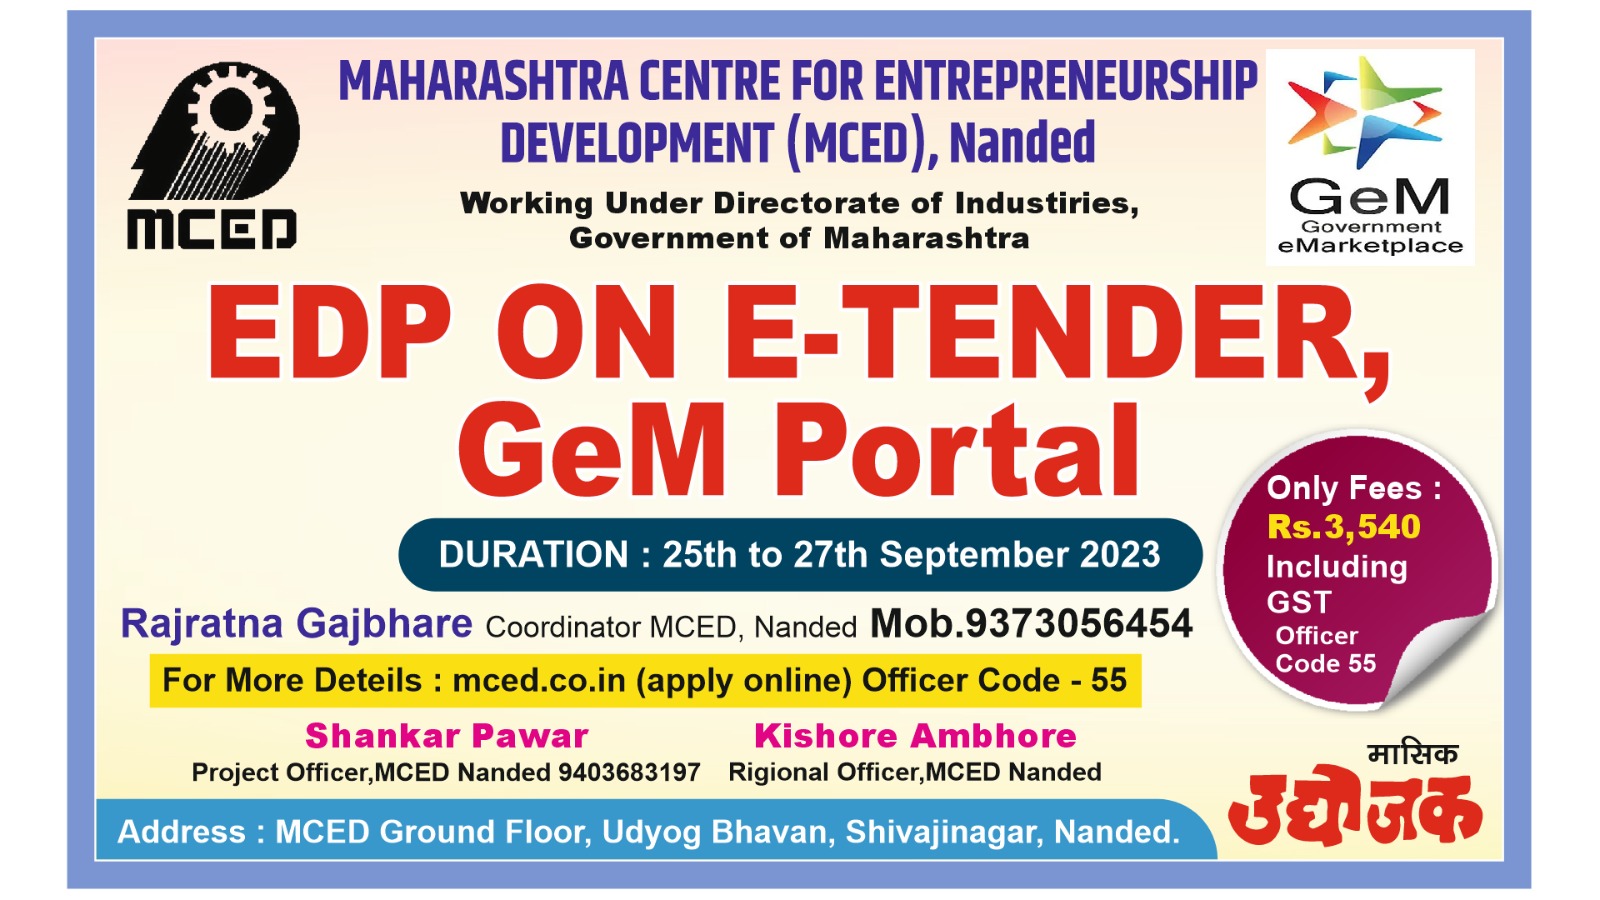 EDP on E-Tender, GeM Portal